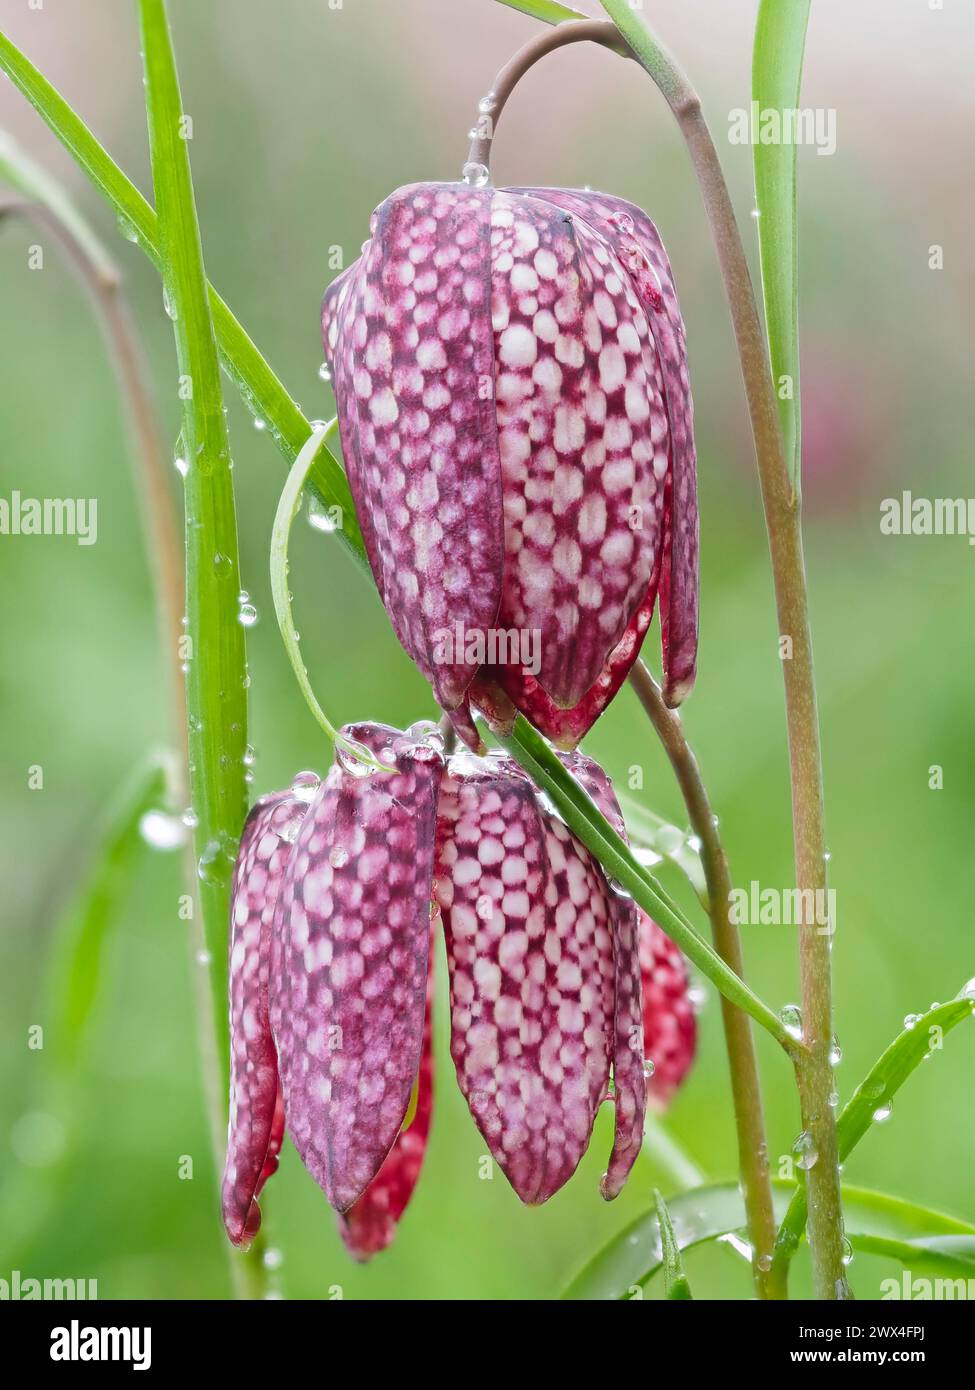 Motivo a scacchi tessellato sui petali della resistente lampadina fiorita a primavera, Fritillaria meleagris Foto Stock